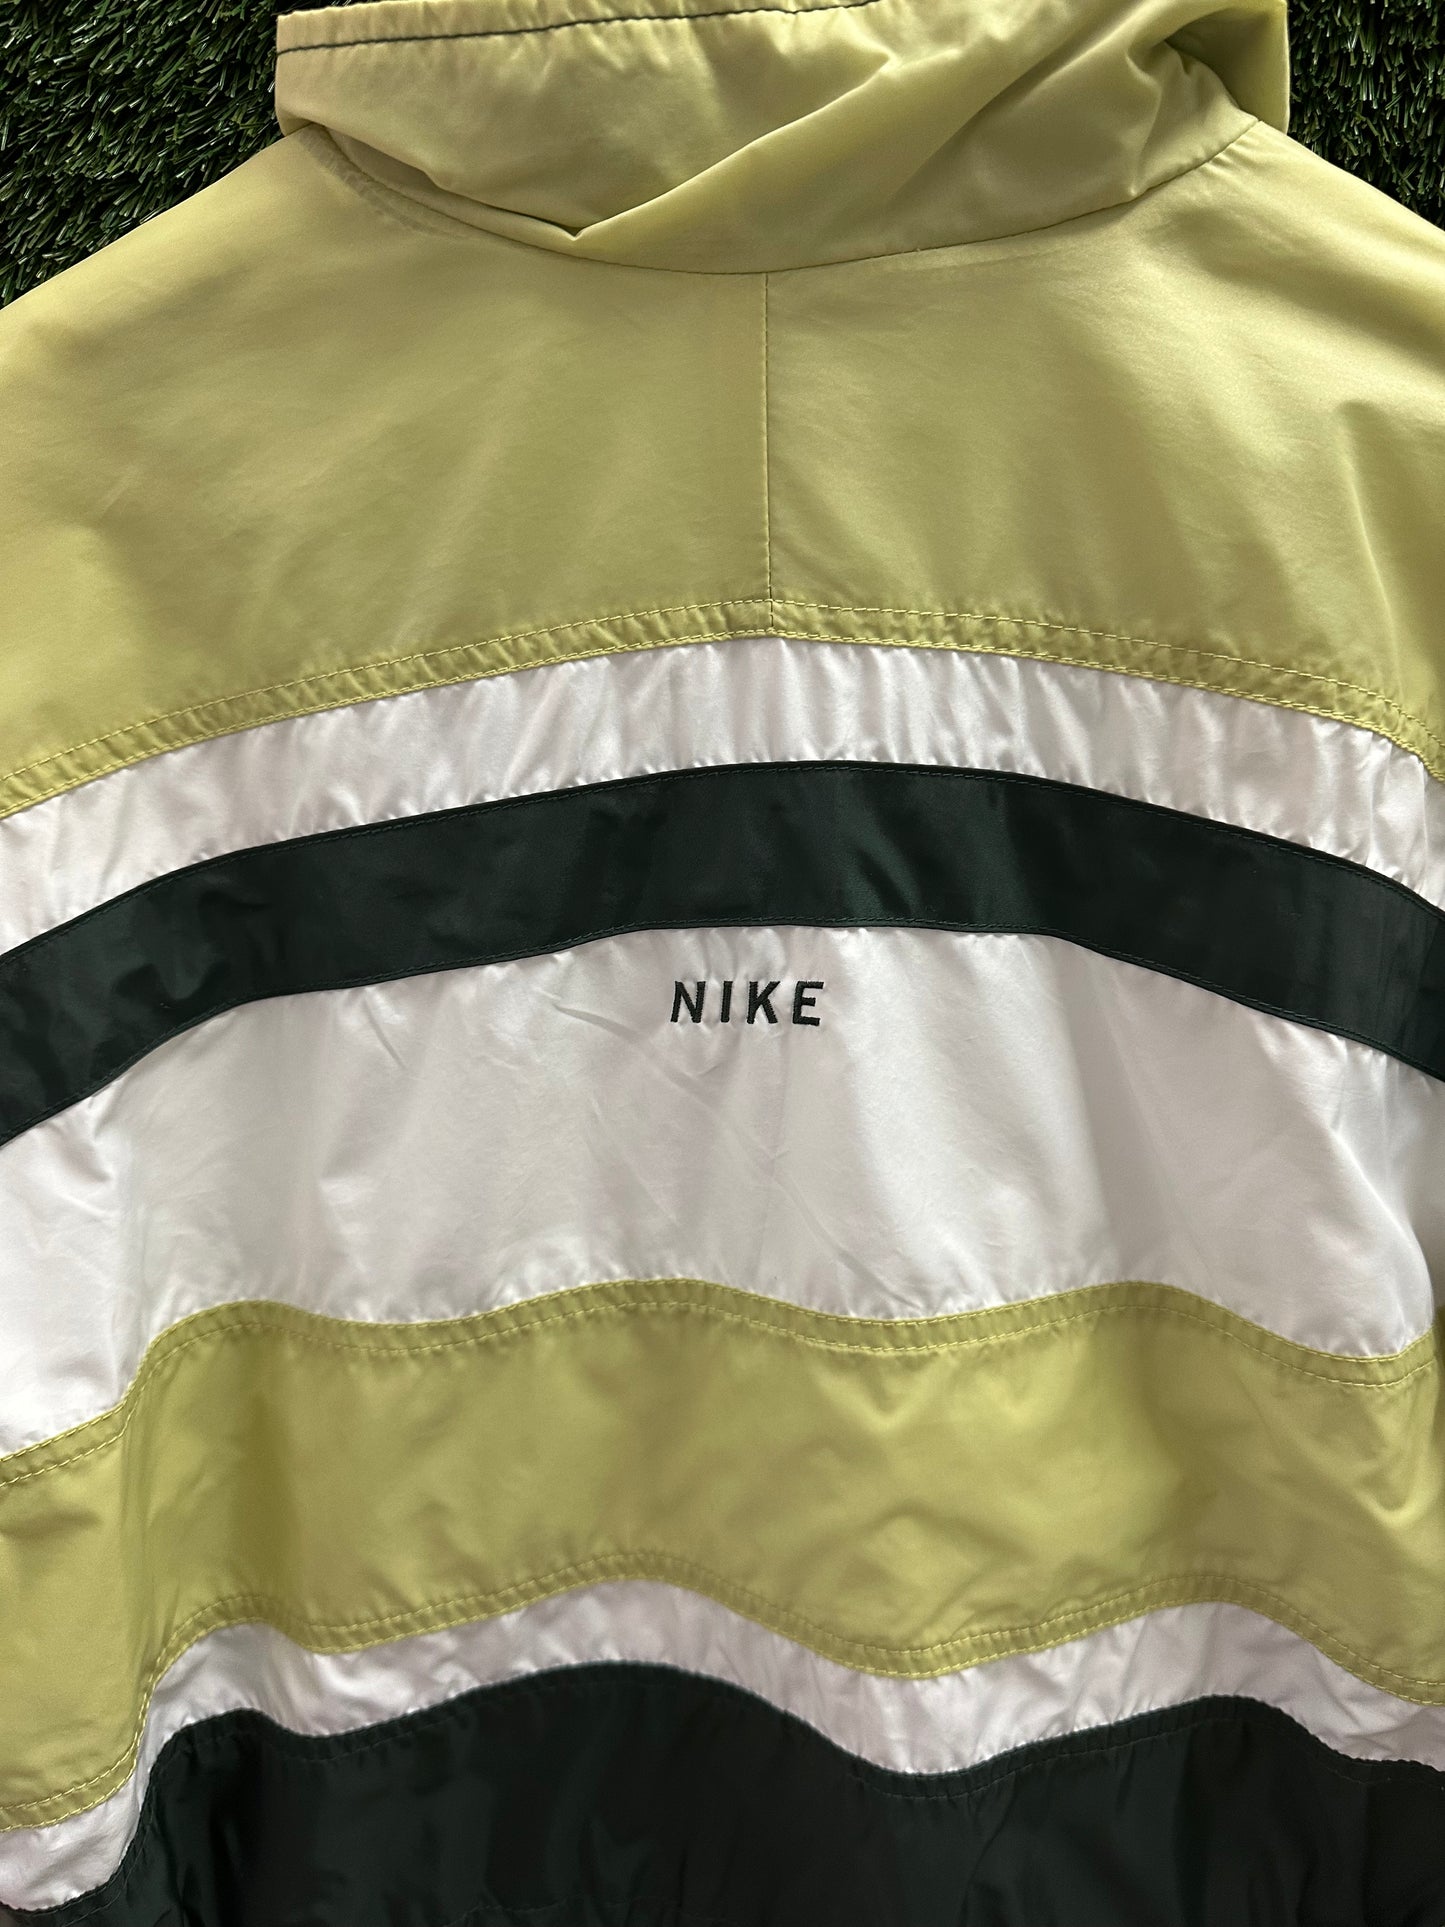 Vintage Nike Zip-up Jacket - S